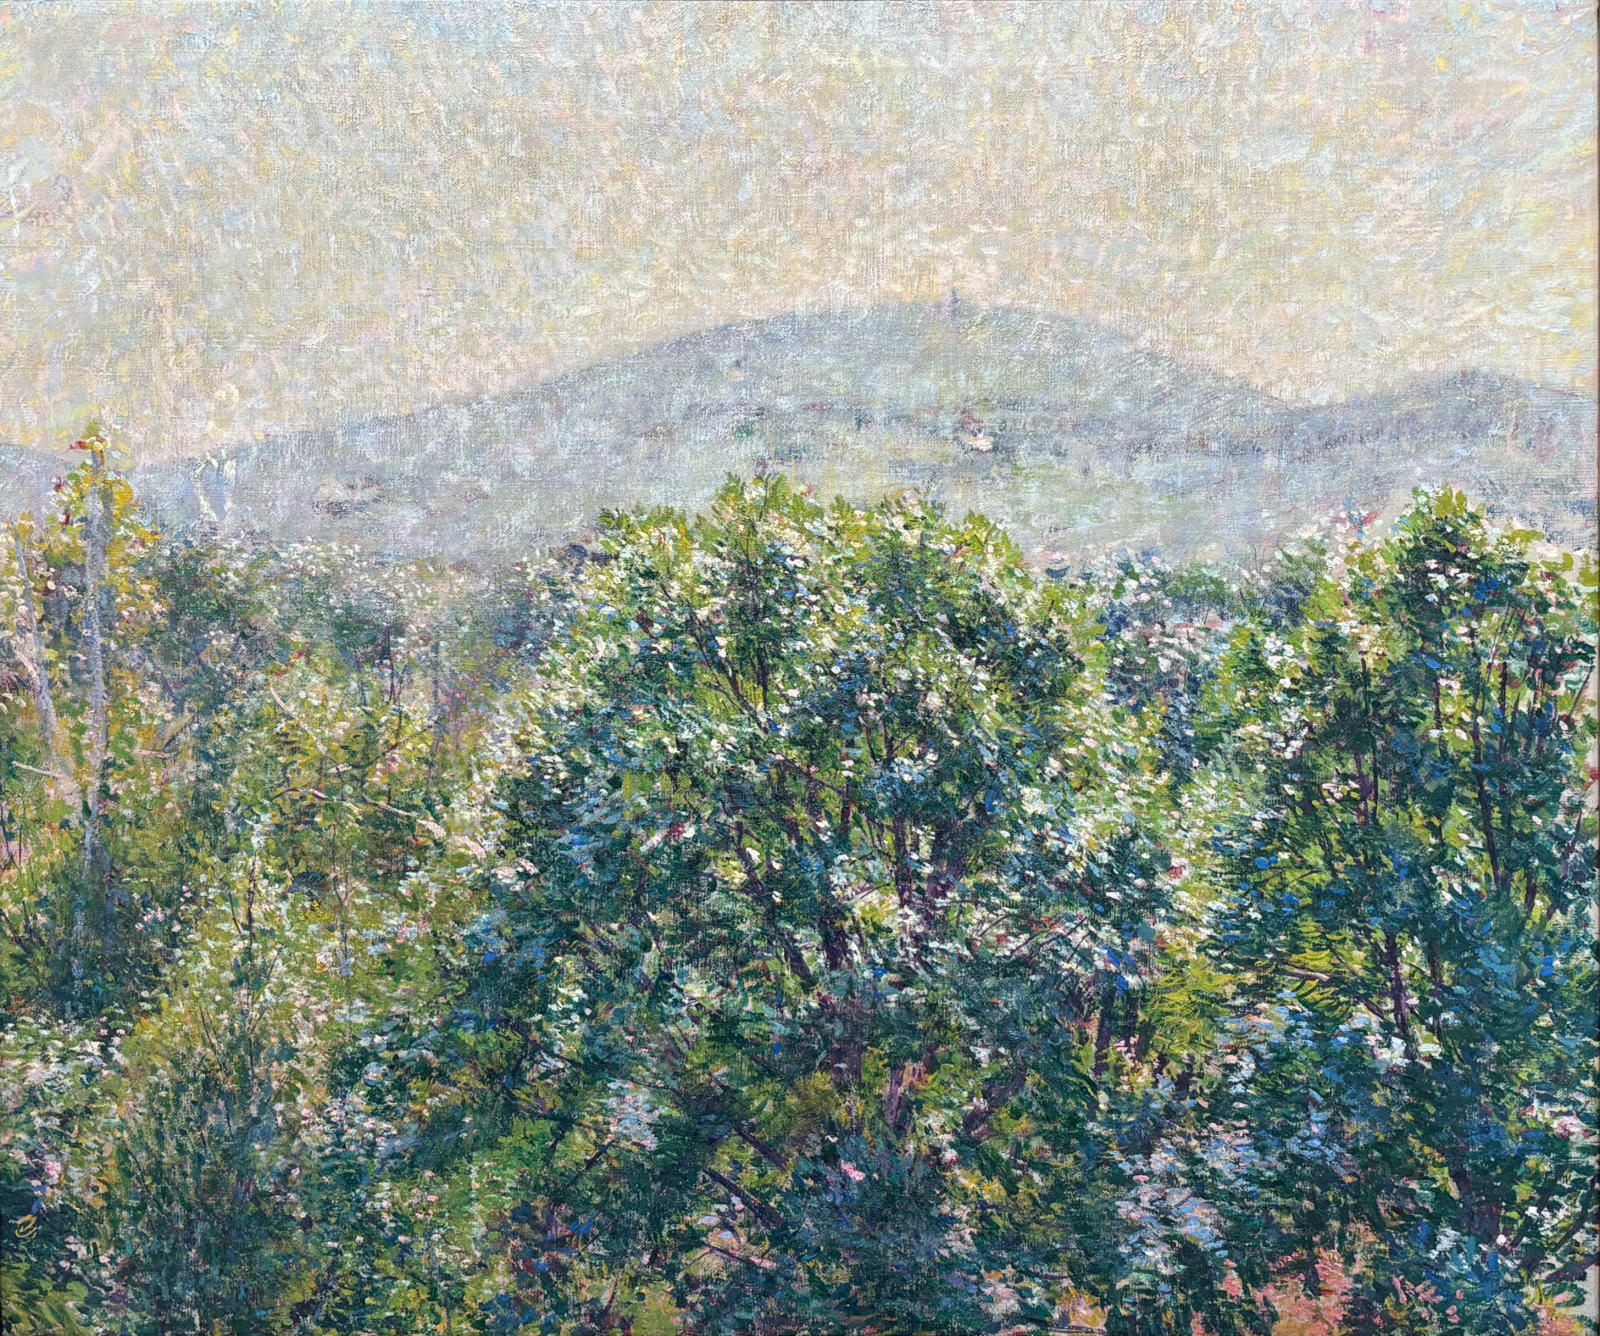 Blue Hills from Artist's Bedroom Window